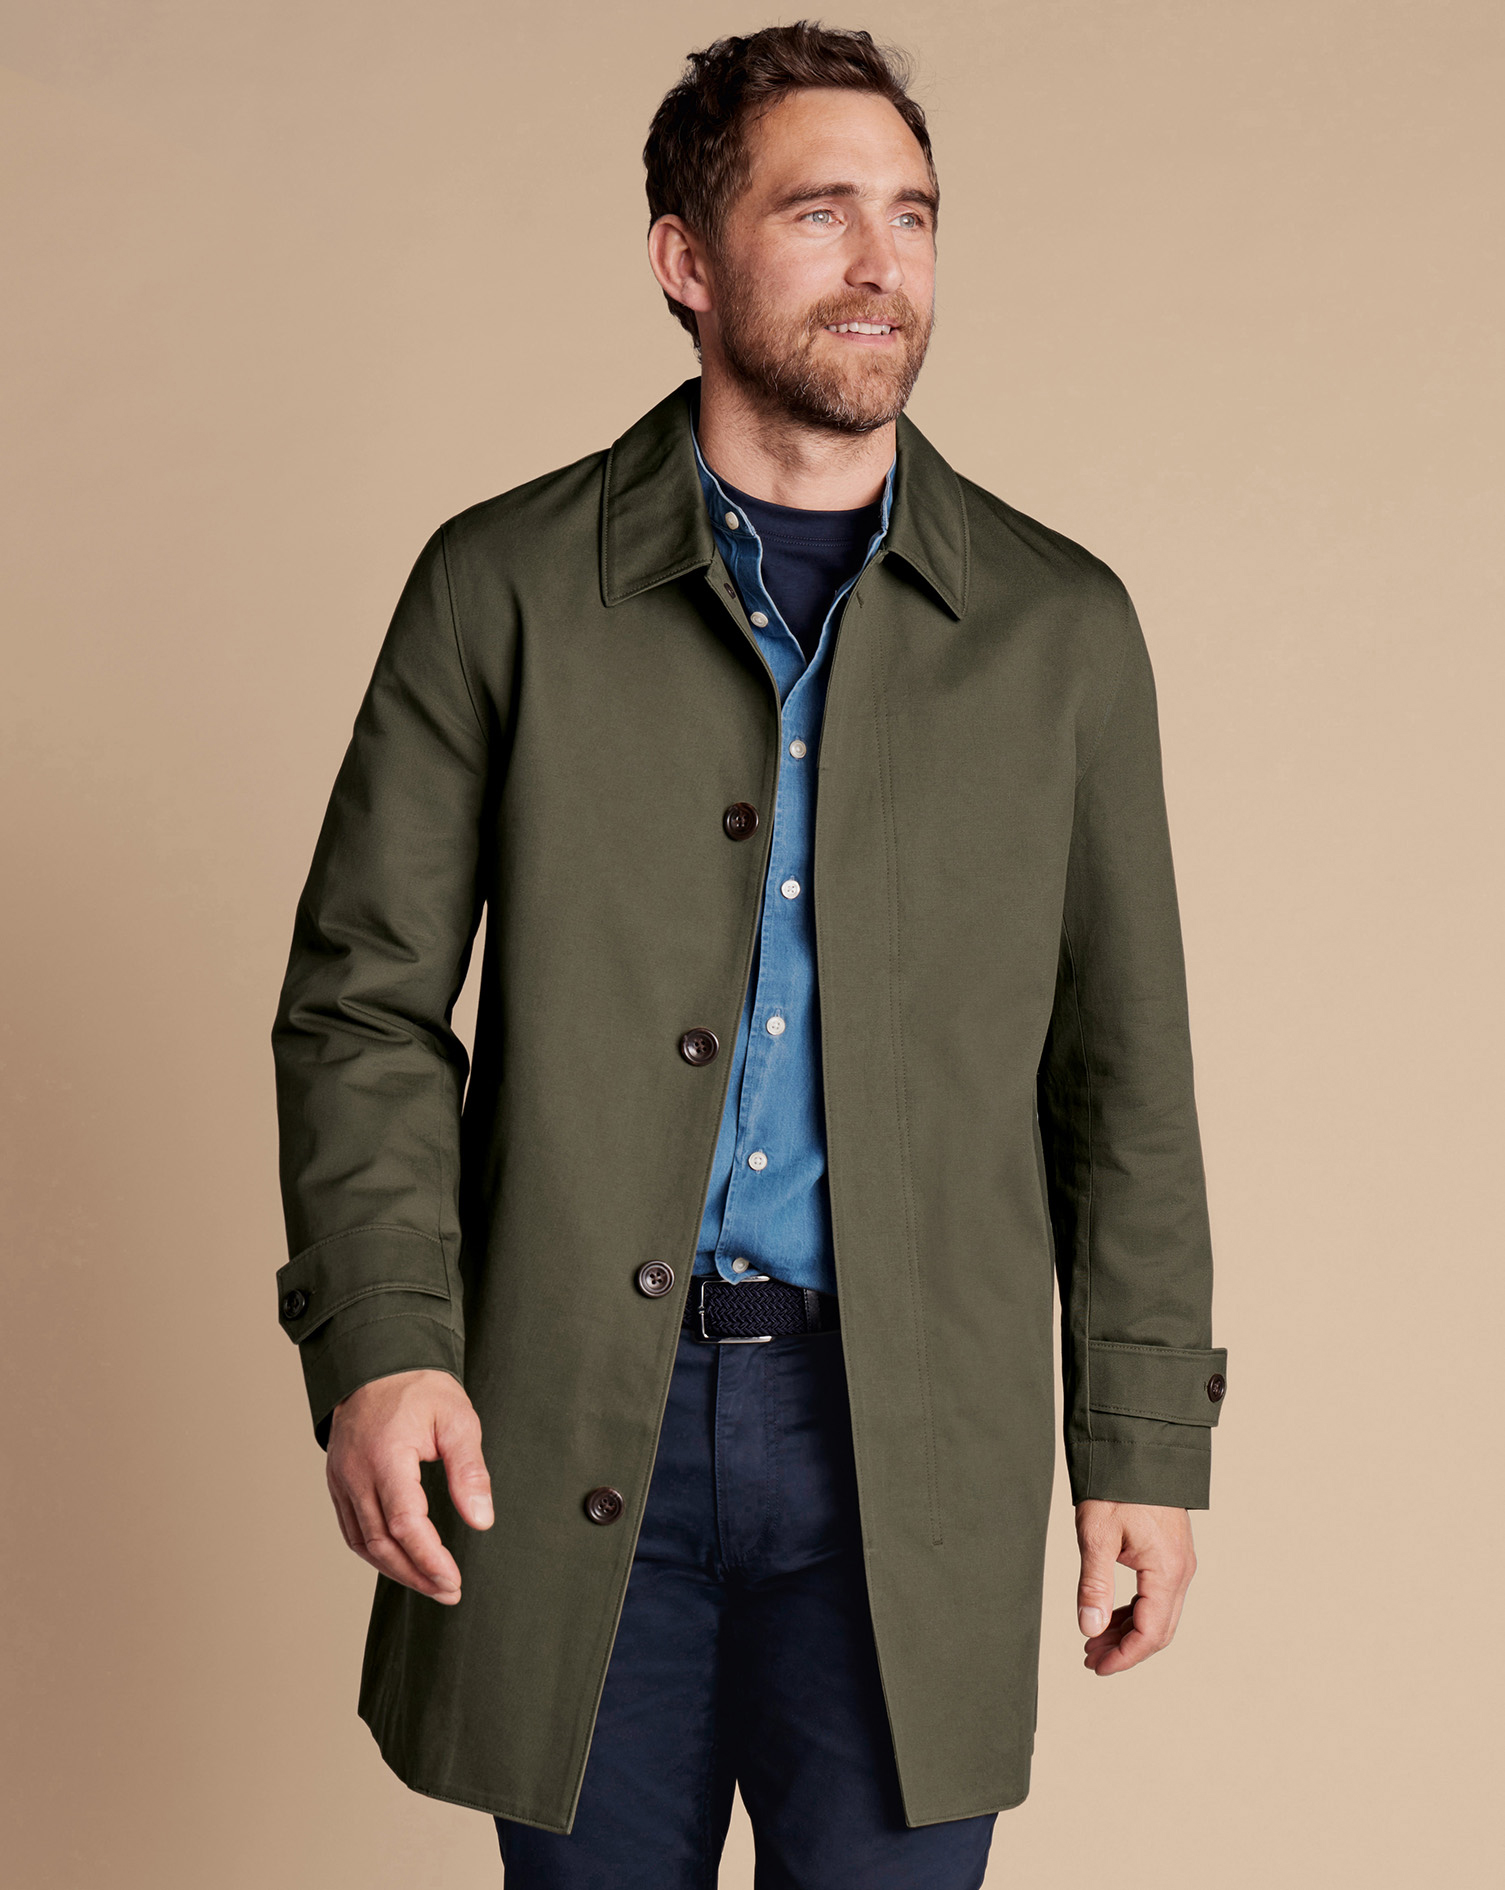 Men's Charles Tyrwhitt Showerproof Rainna coat - Olive Green Size 36R Cotton
